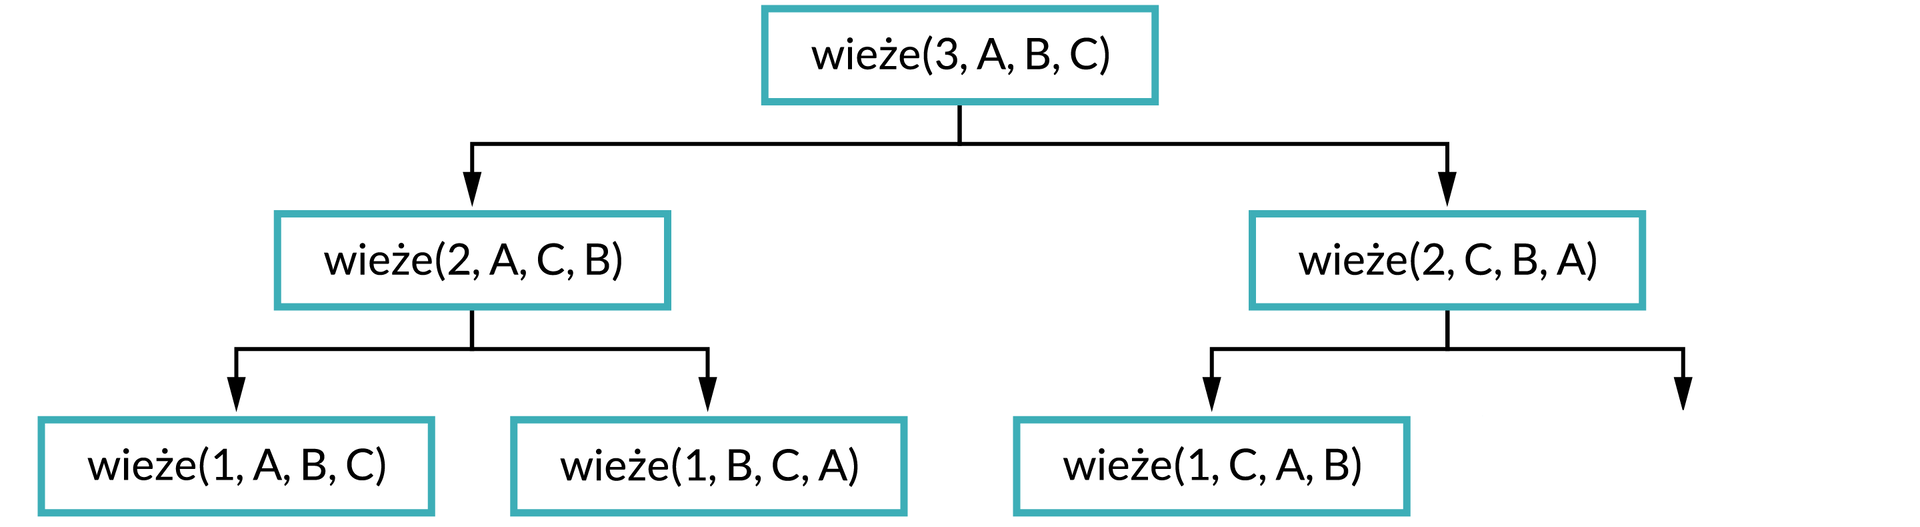 Ilustracja przedstawia schemat. Na górze schematu w prostokątnej ramce jest napis: wieże(3, A, B, C). Od ramki dwie strzałki w dół, pod strzałką po lewej stronie zapis w ramce: wieże(2, A, C, B). Od ramki dwie strzałki w dół, pod strzałką po lewej stronie zapis w ramce: wieże(1, A, B, C), pod strzałką po prawej stronie wieże(1, B, C, A). Pod strzałką po prawej stronie od pierwszego zapisu napis: wieże(2, C, B, A). Od ramki dwie strzałki w dół. Pod strzałką po lewej stronie zapis: wieże(1, C, A, B).     